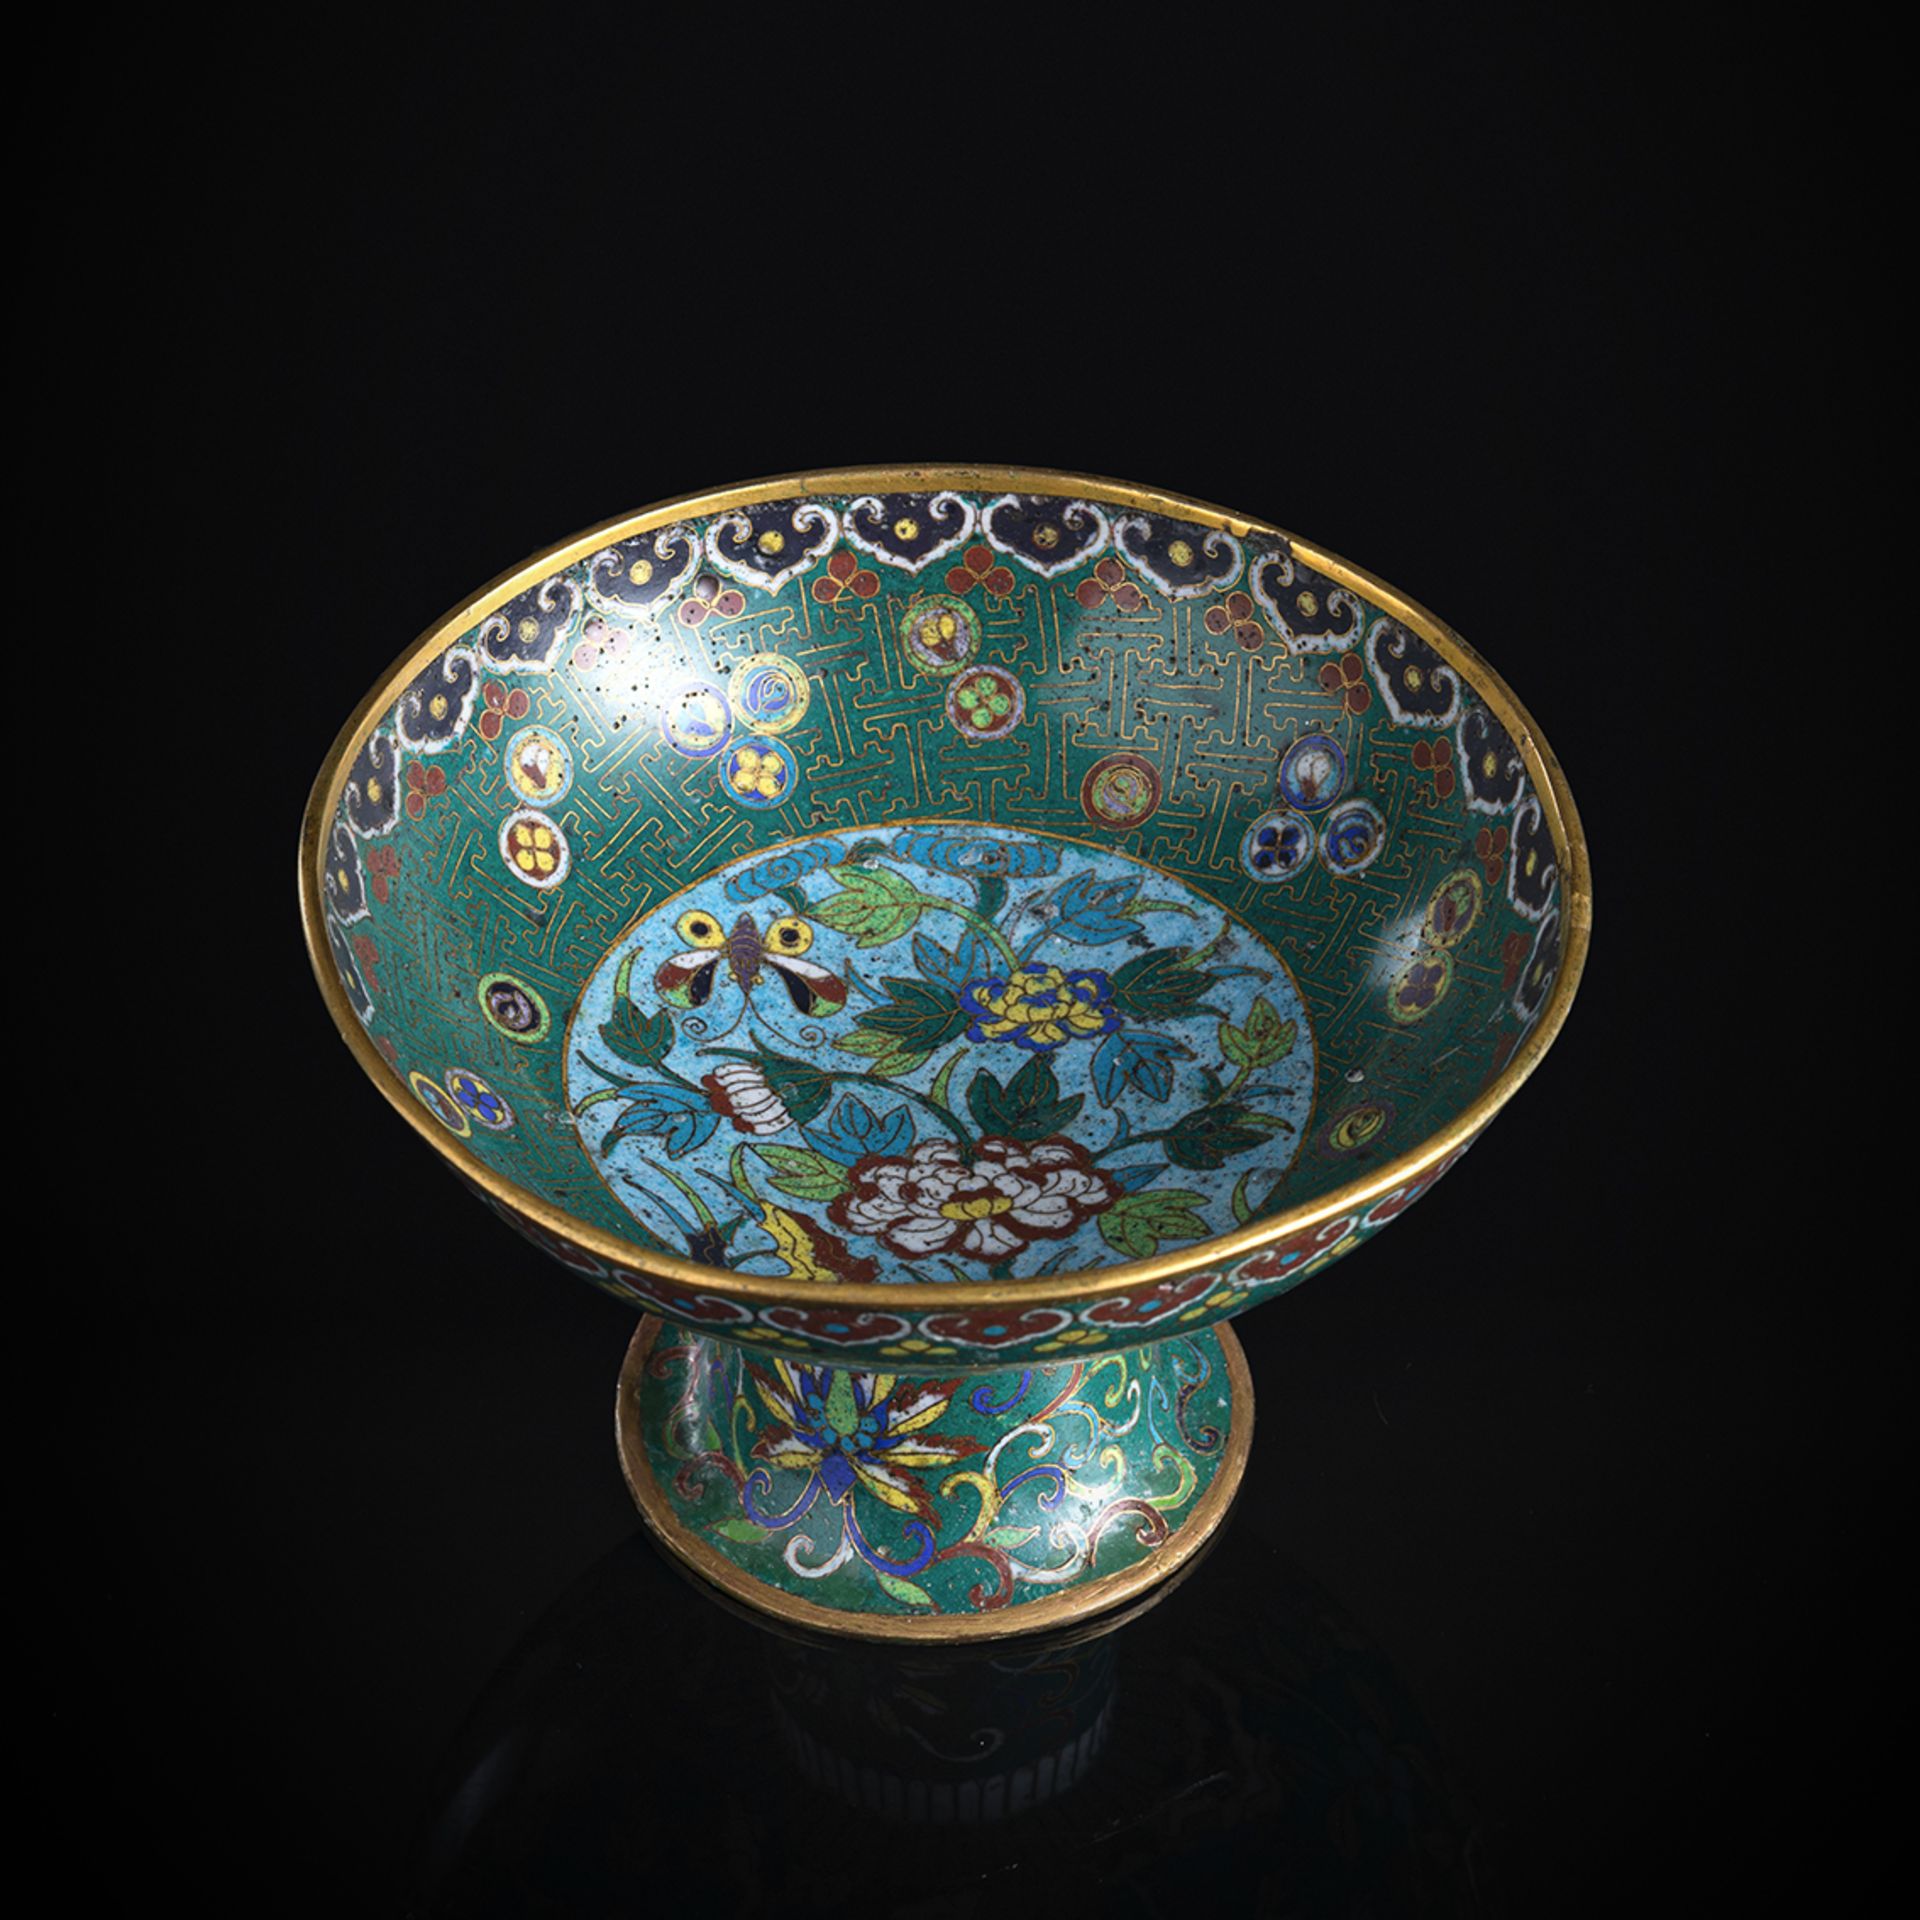 Gefußte Schale mit Cloisonné-Dekor von verschiedenen Blüten und Schmetterling auf grünem Fond, part